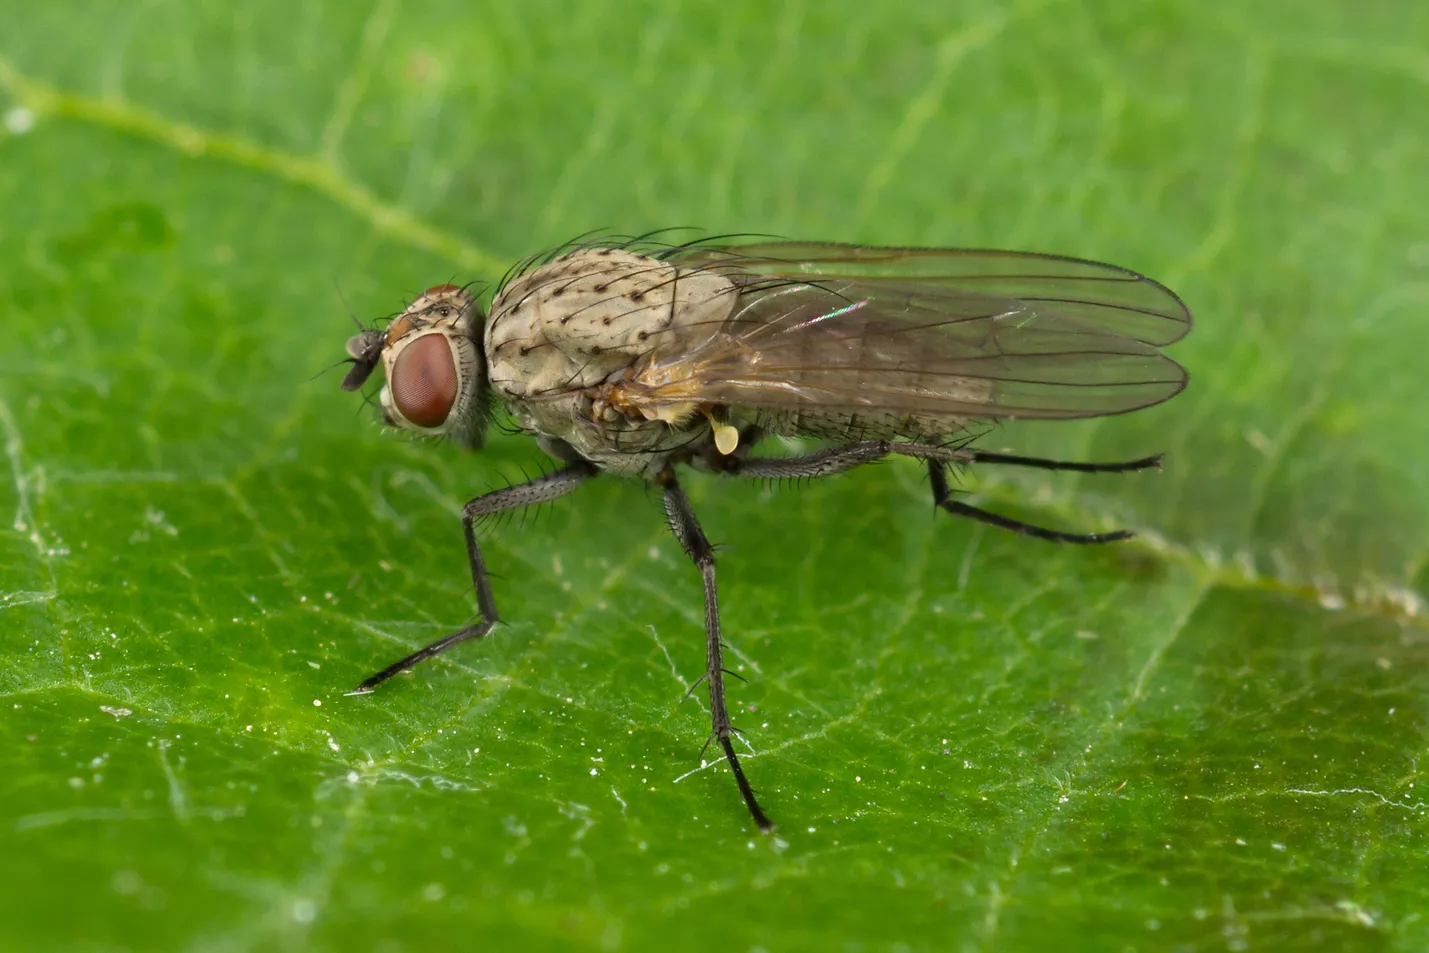 Борьба с луковой мухой на грядках, средства, методы и способы